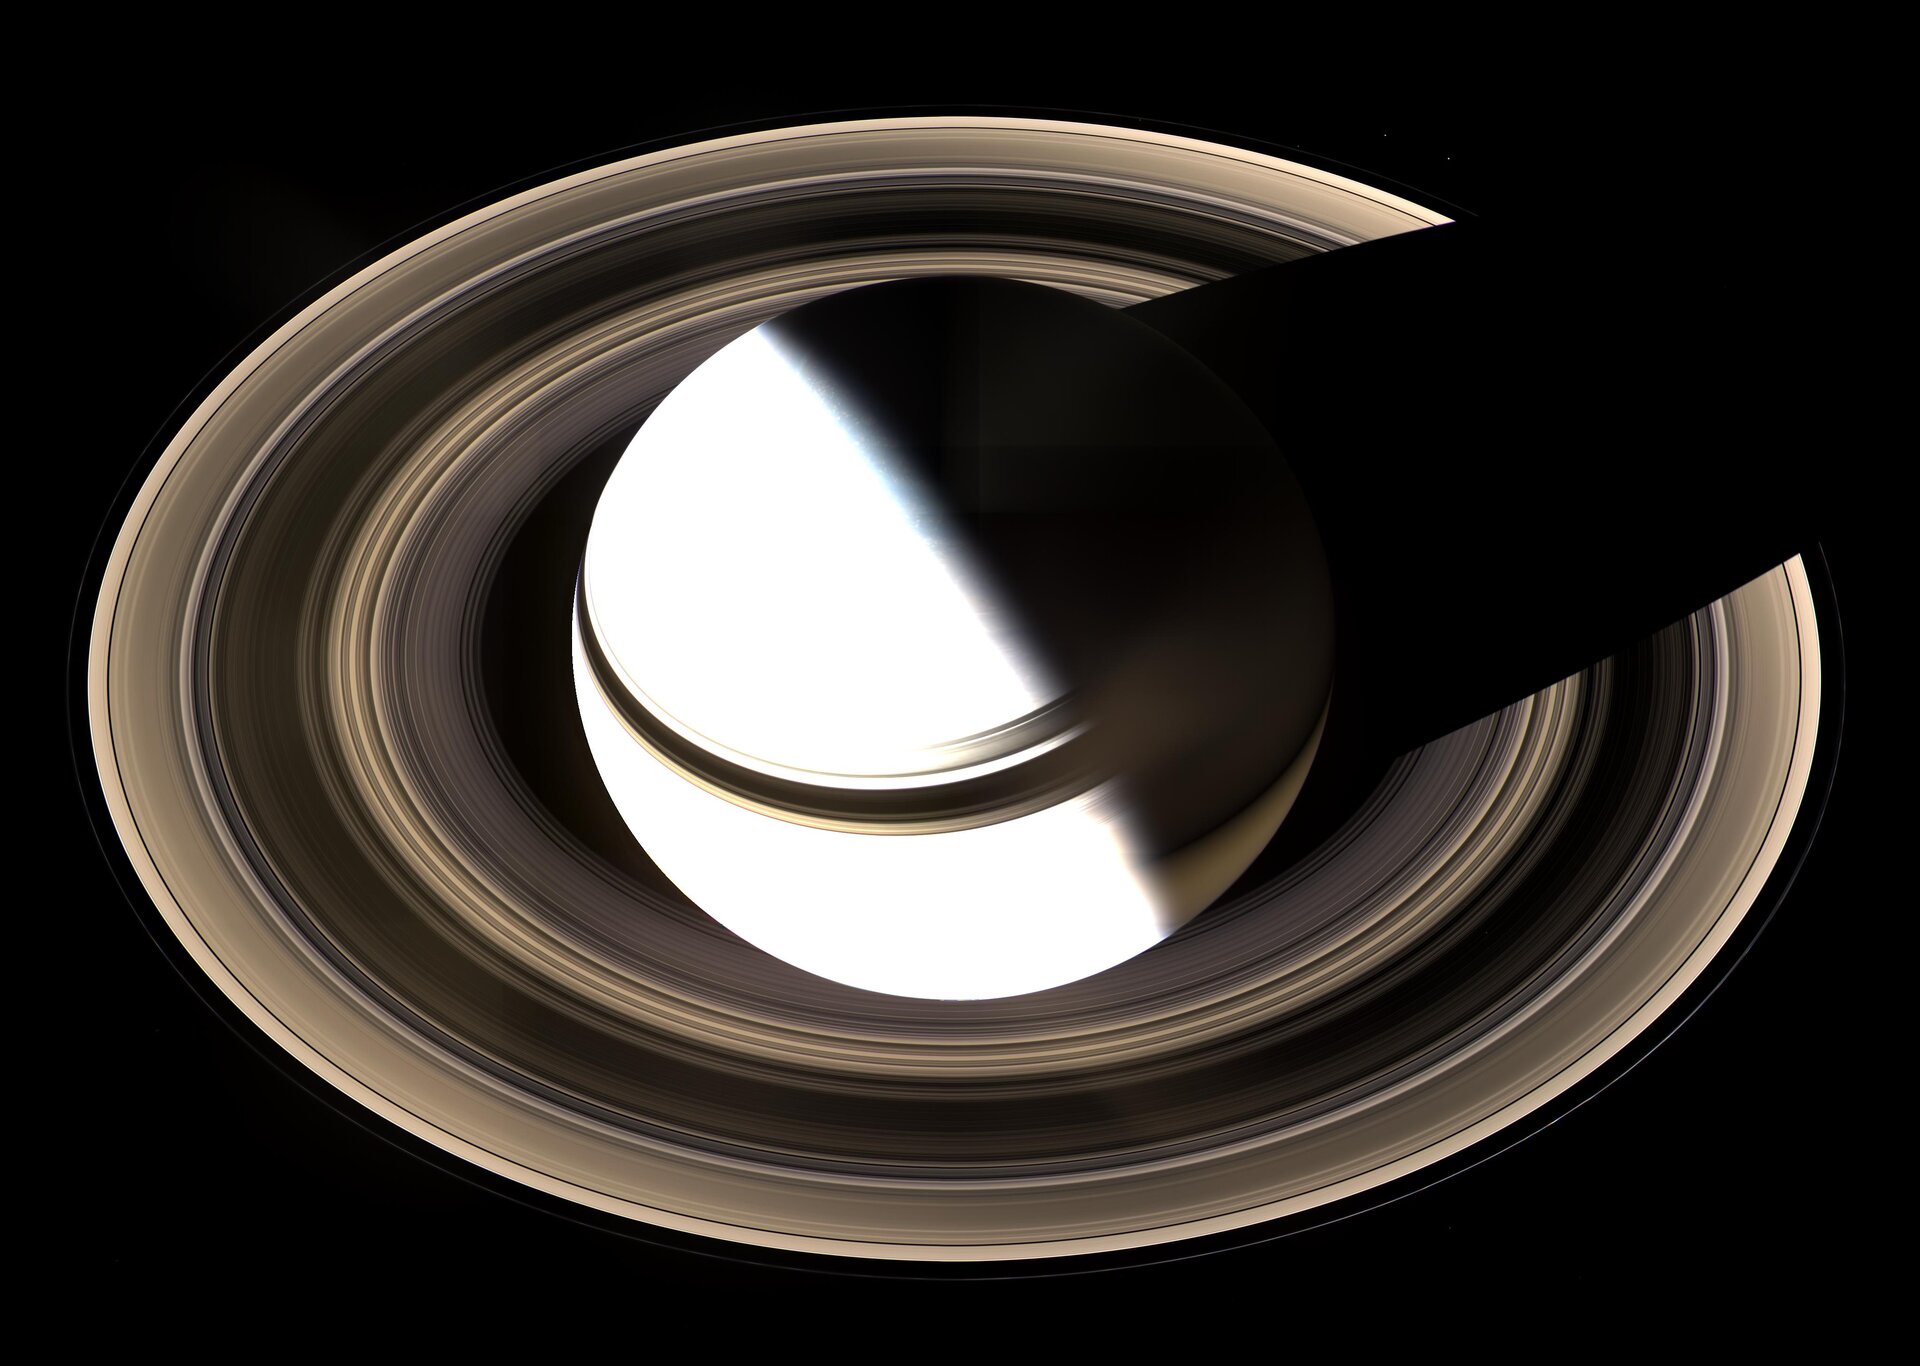 Full splendour of Saturn's stately rings